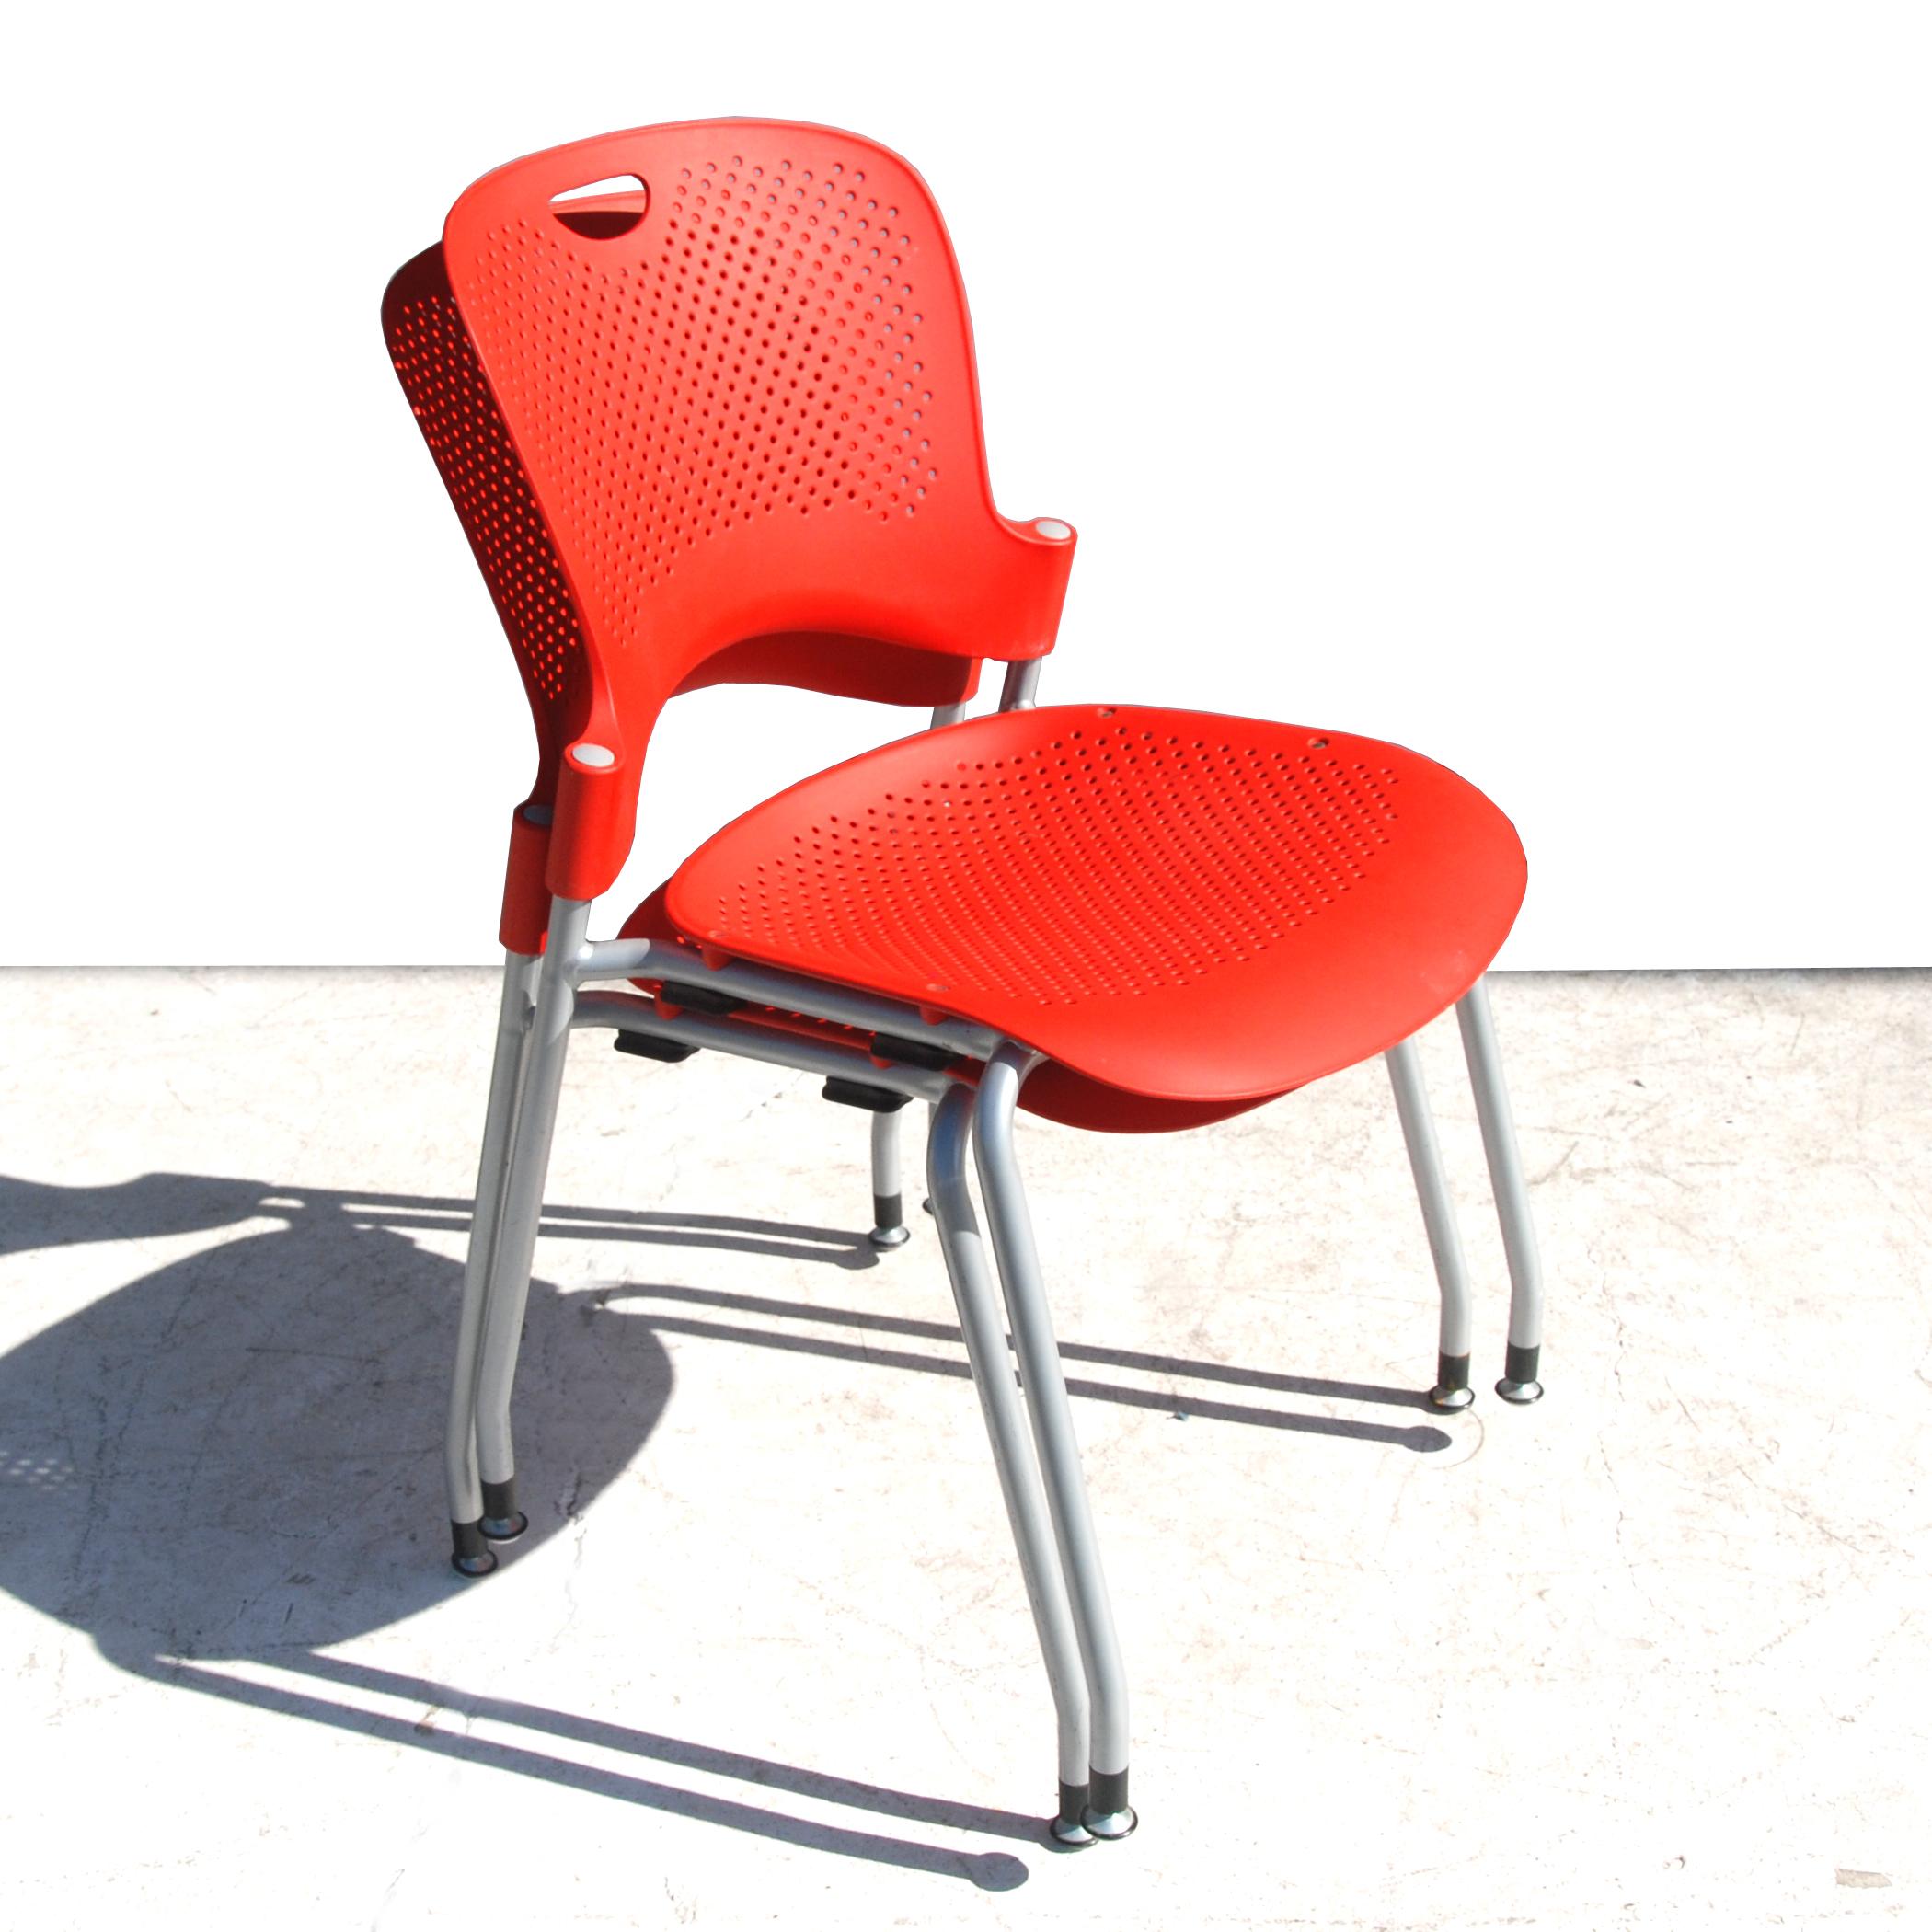 Stapelbarer Stuhl Caper
Entworfen von Jeff Weber für Herman Miller
Die Polypropylen-Rückenlehne von Caper passt sich Ihrem Rücken an und ist mit Löchern versehen, damit Ihr Körper atmen kann. Dadurch werden Feuchtigkeit und Wärme abgeleitet und